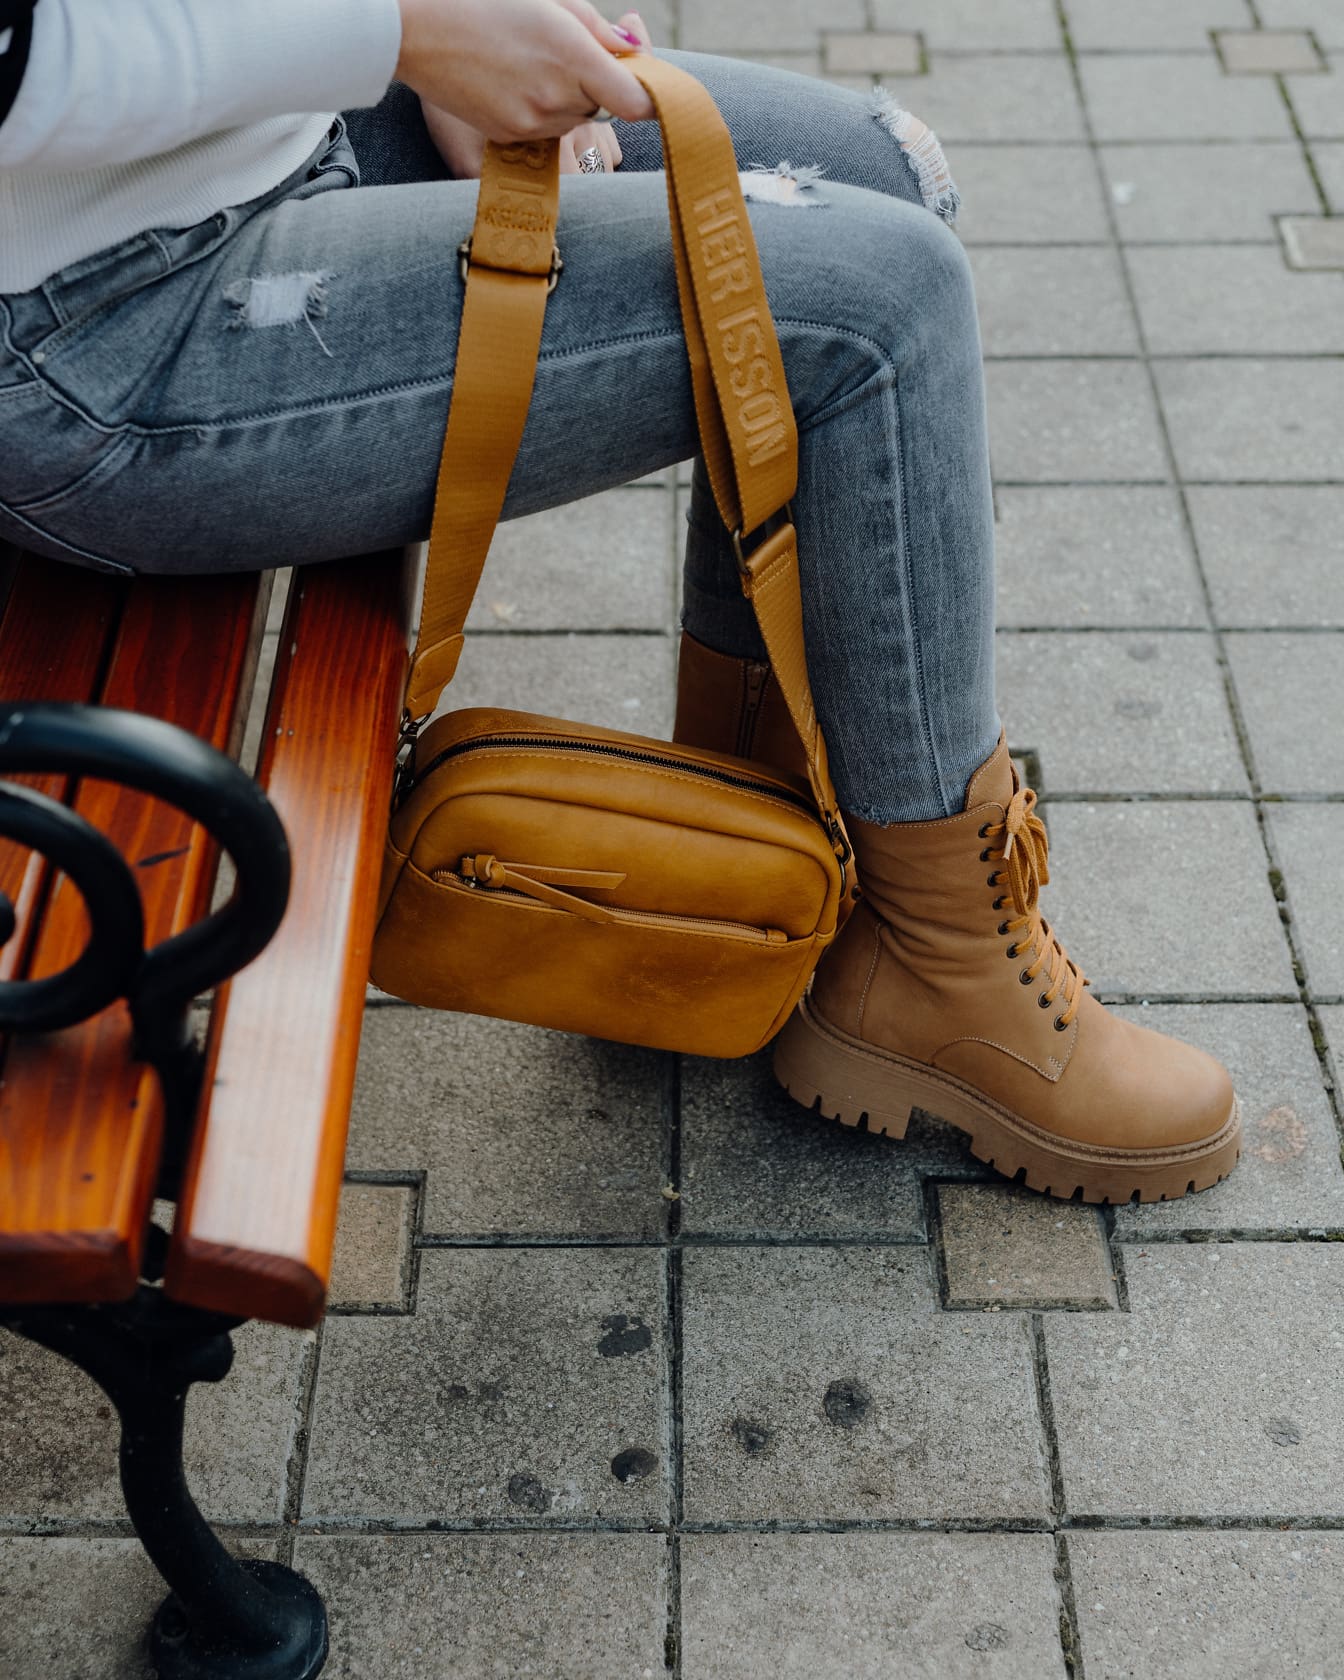 Persona sentada en un banco sosteniendo un bolso de cuero marrón amarillento en la mano